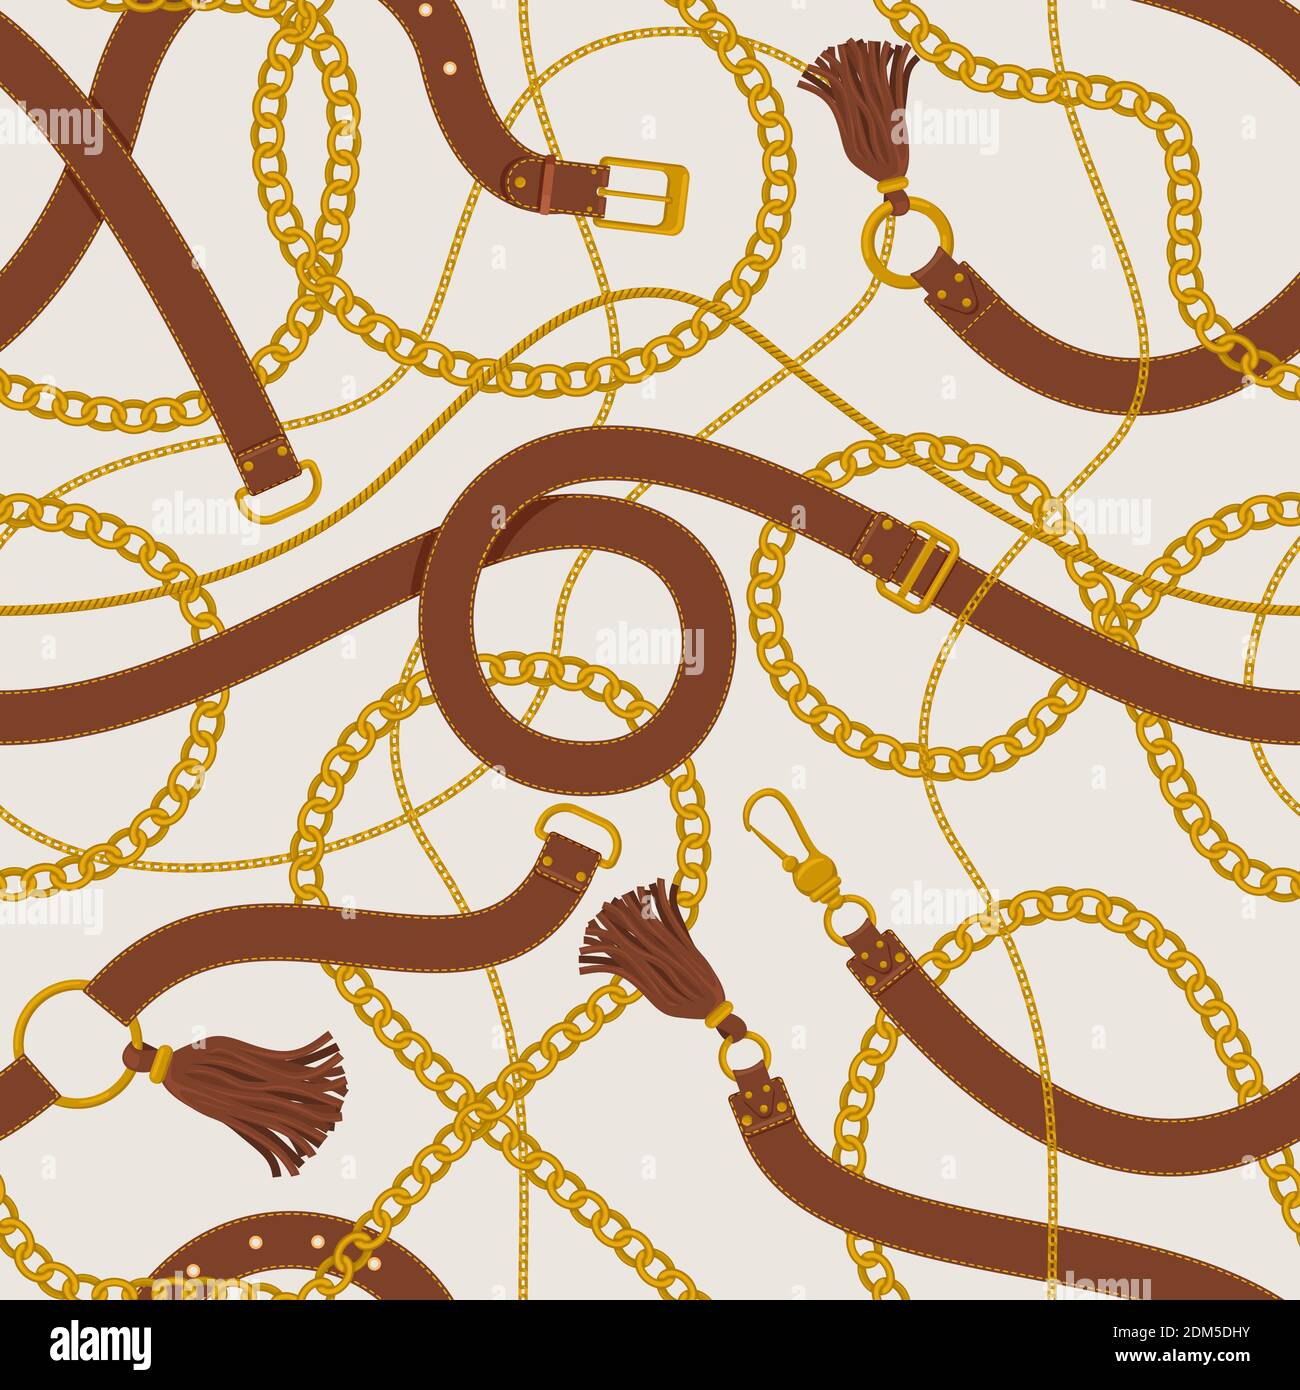 Schema di catene e cinghie. Cinture in pelle, nappine, anelli dorati e tracolle sullo sfondo. Cinghie e catene dorate immagine di sfondo vettoriale Illustrazione Vettoriale